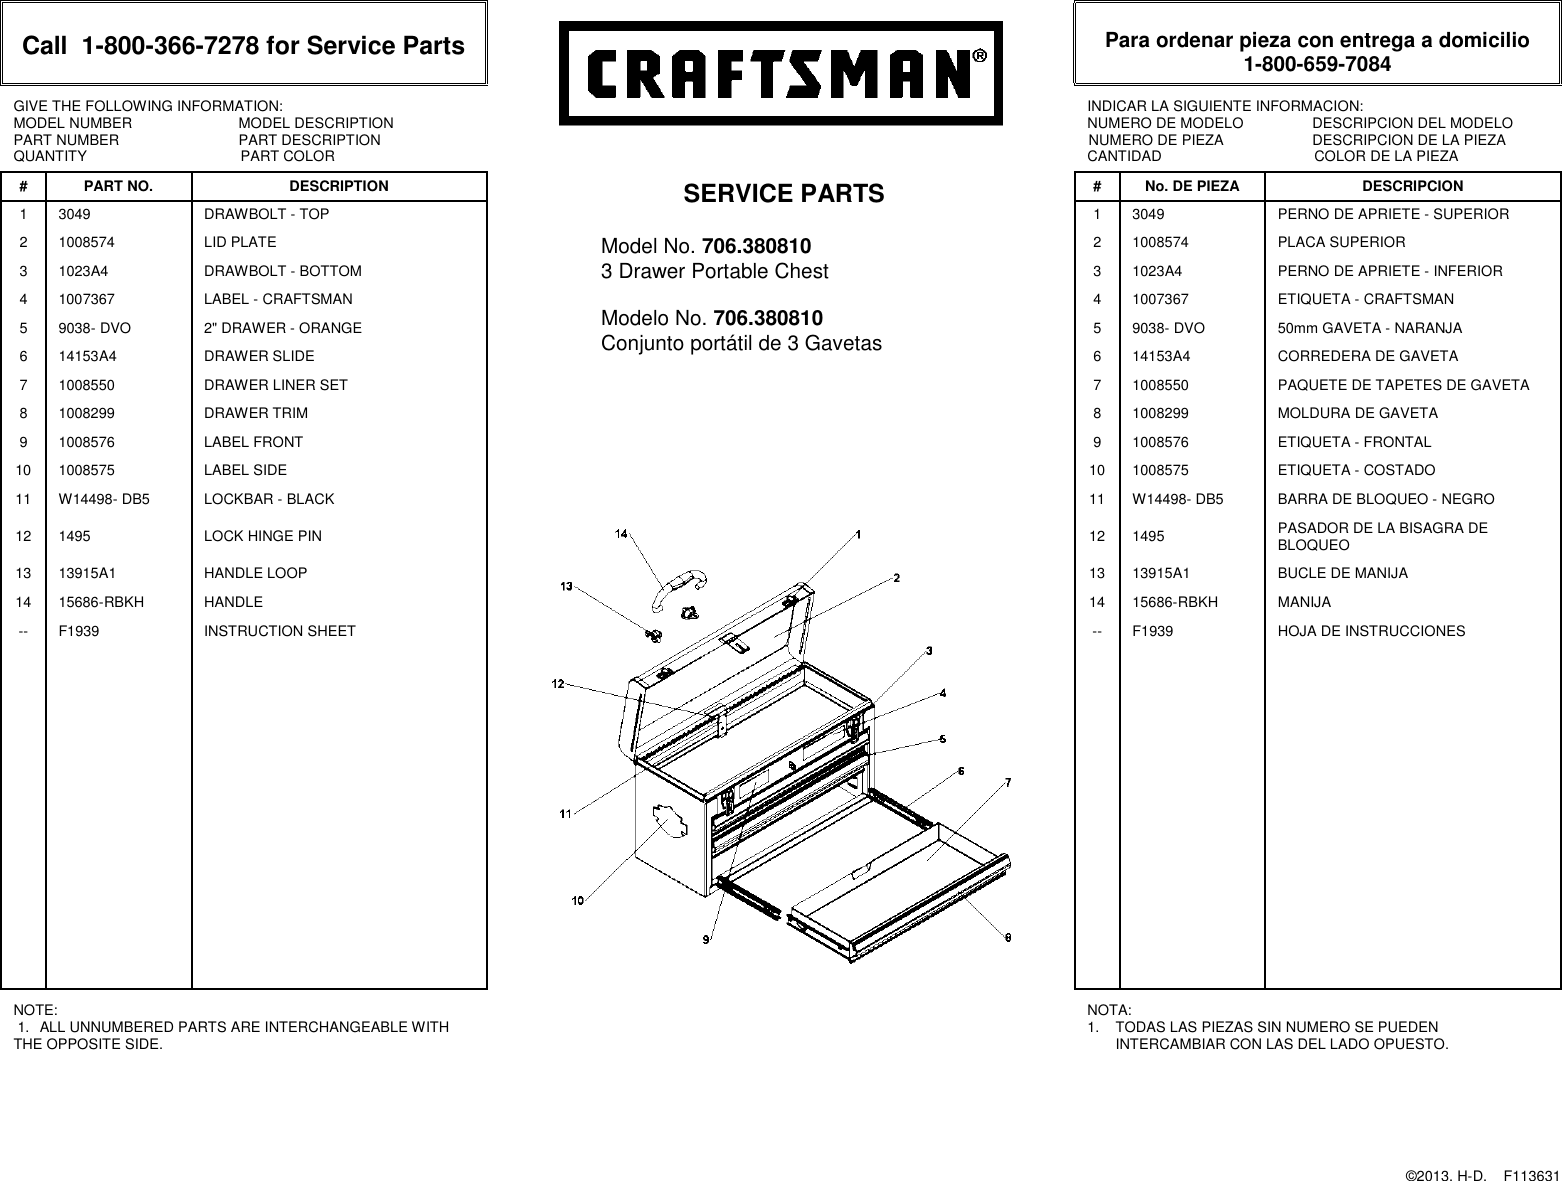 Page 1 of 1 - Craftsman Craftsman-Harley-Davidson-Portable-Chest-Service-Parts-  Craftsman-harley-davidson-portable-chest-service-parts